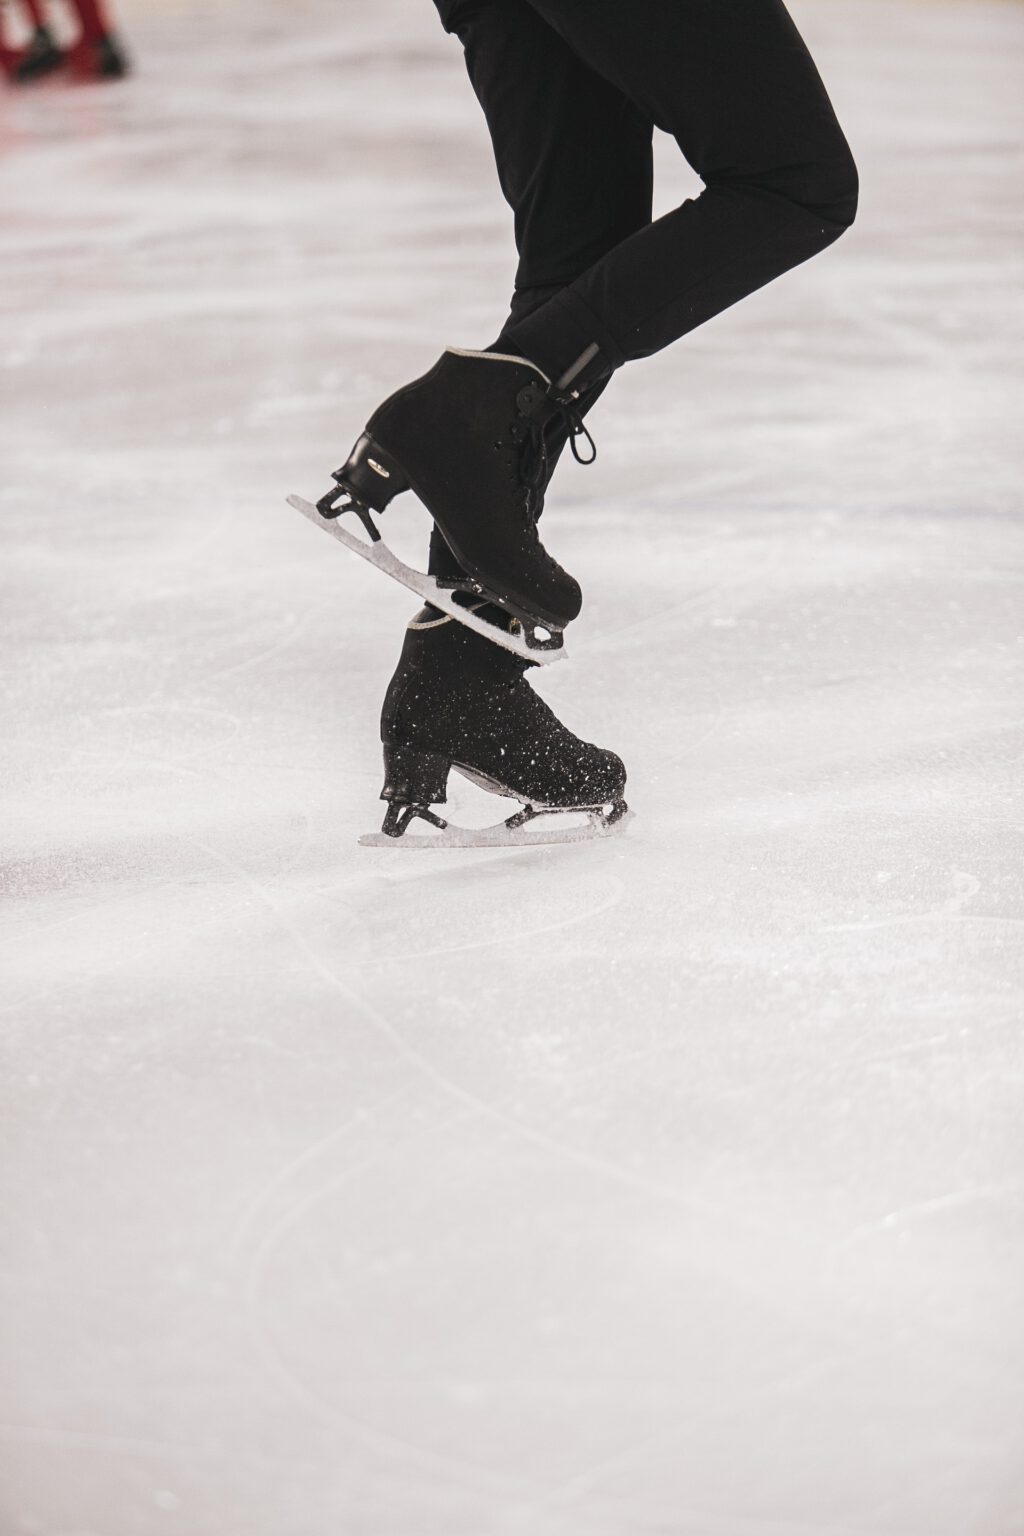 schaatsen en schaatskleding